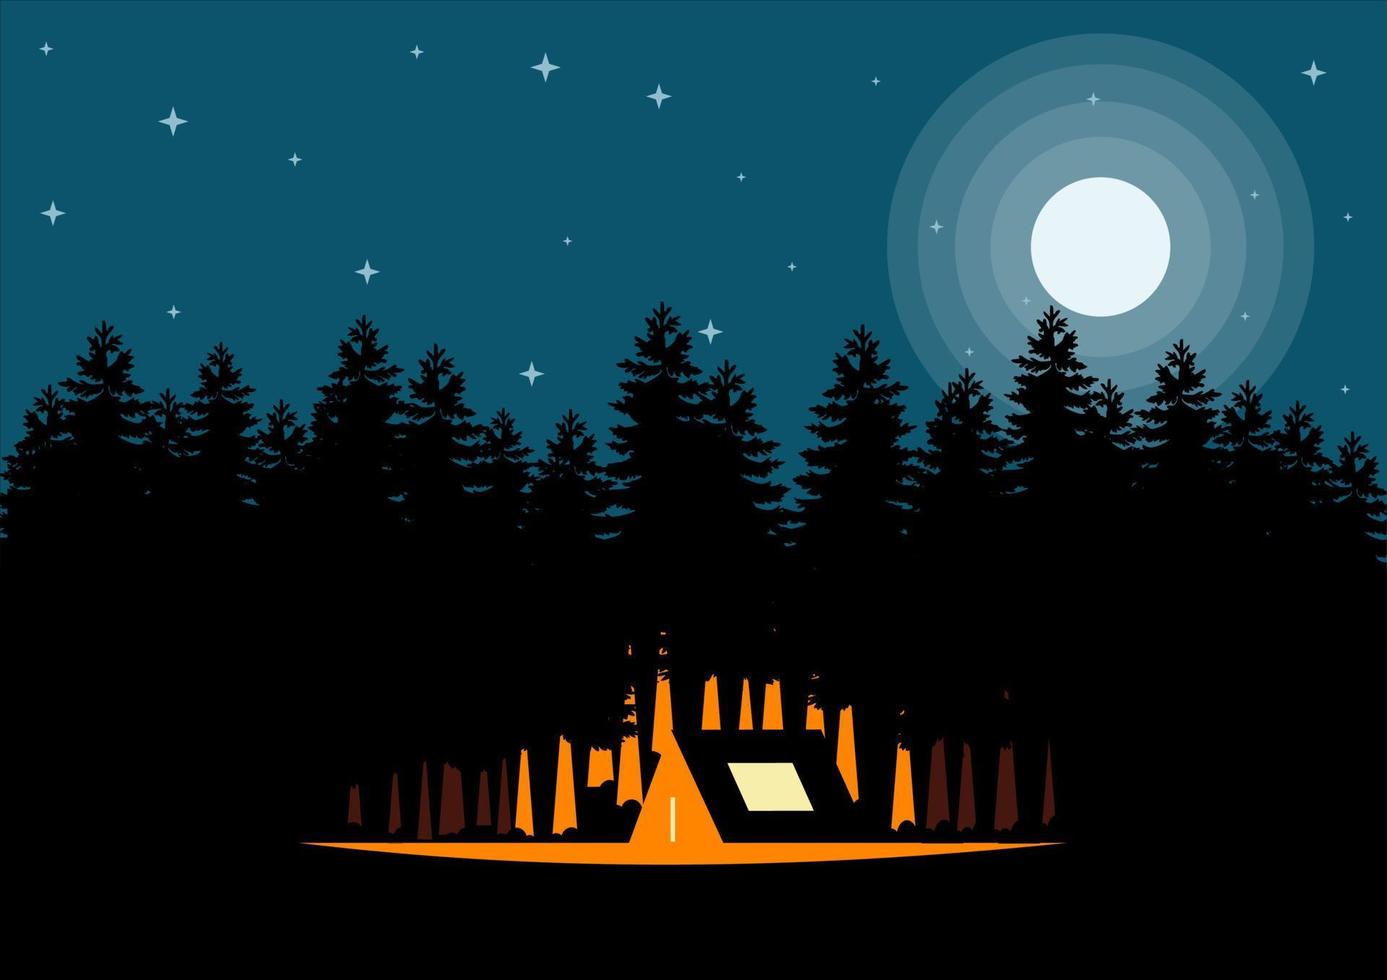 nacht landschap illustratie in vlakke stijl met tent, kampvuur, bergen, bos en volle maan. achtergrond voor outdoor, bergbeklimmen, zomerkamp, natuurtoerisme, kamperen of wandelen ontwerpconcept. vector